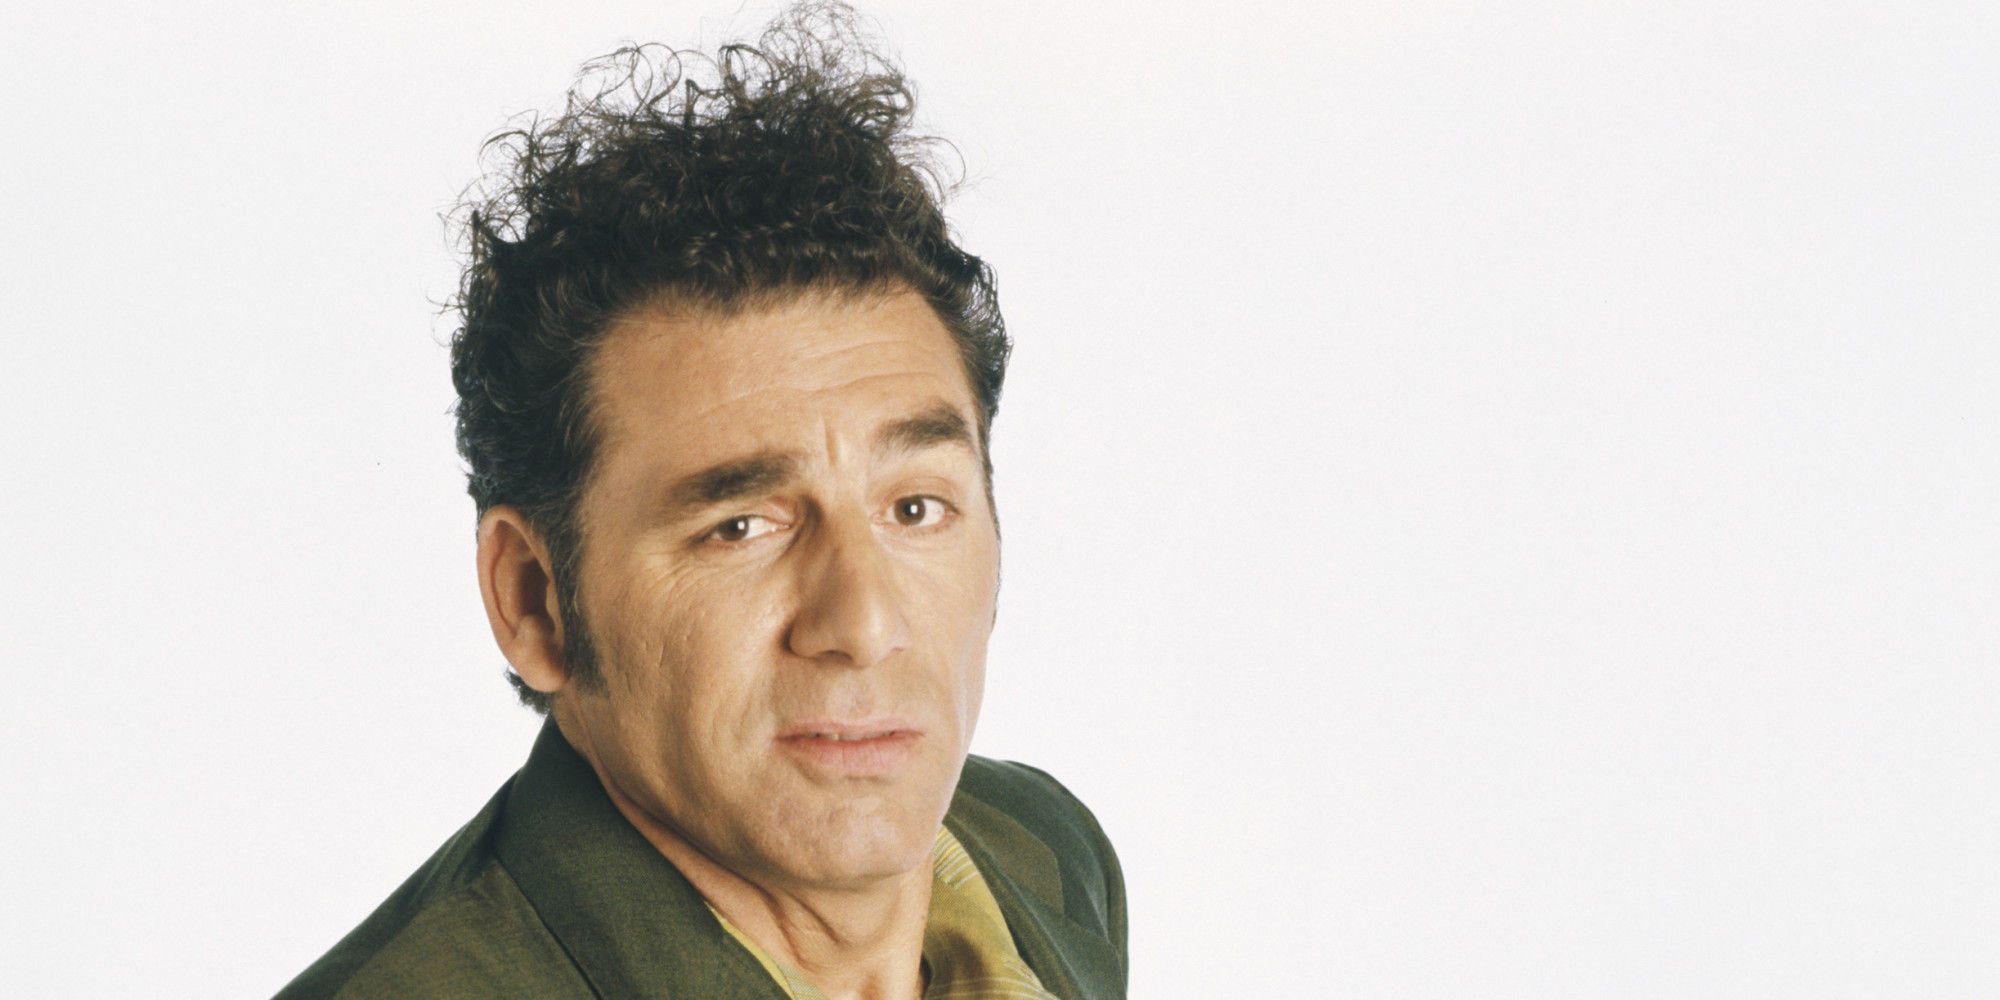 Kramer from Seinfeld